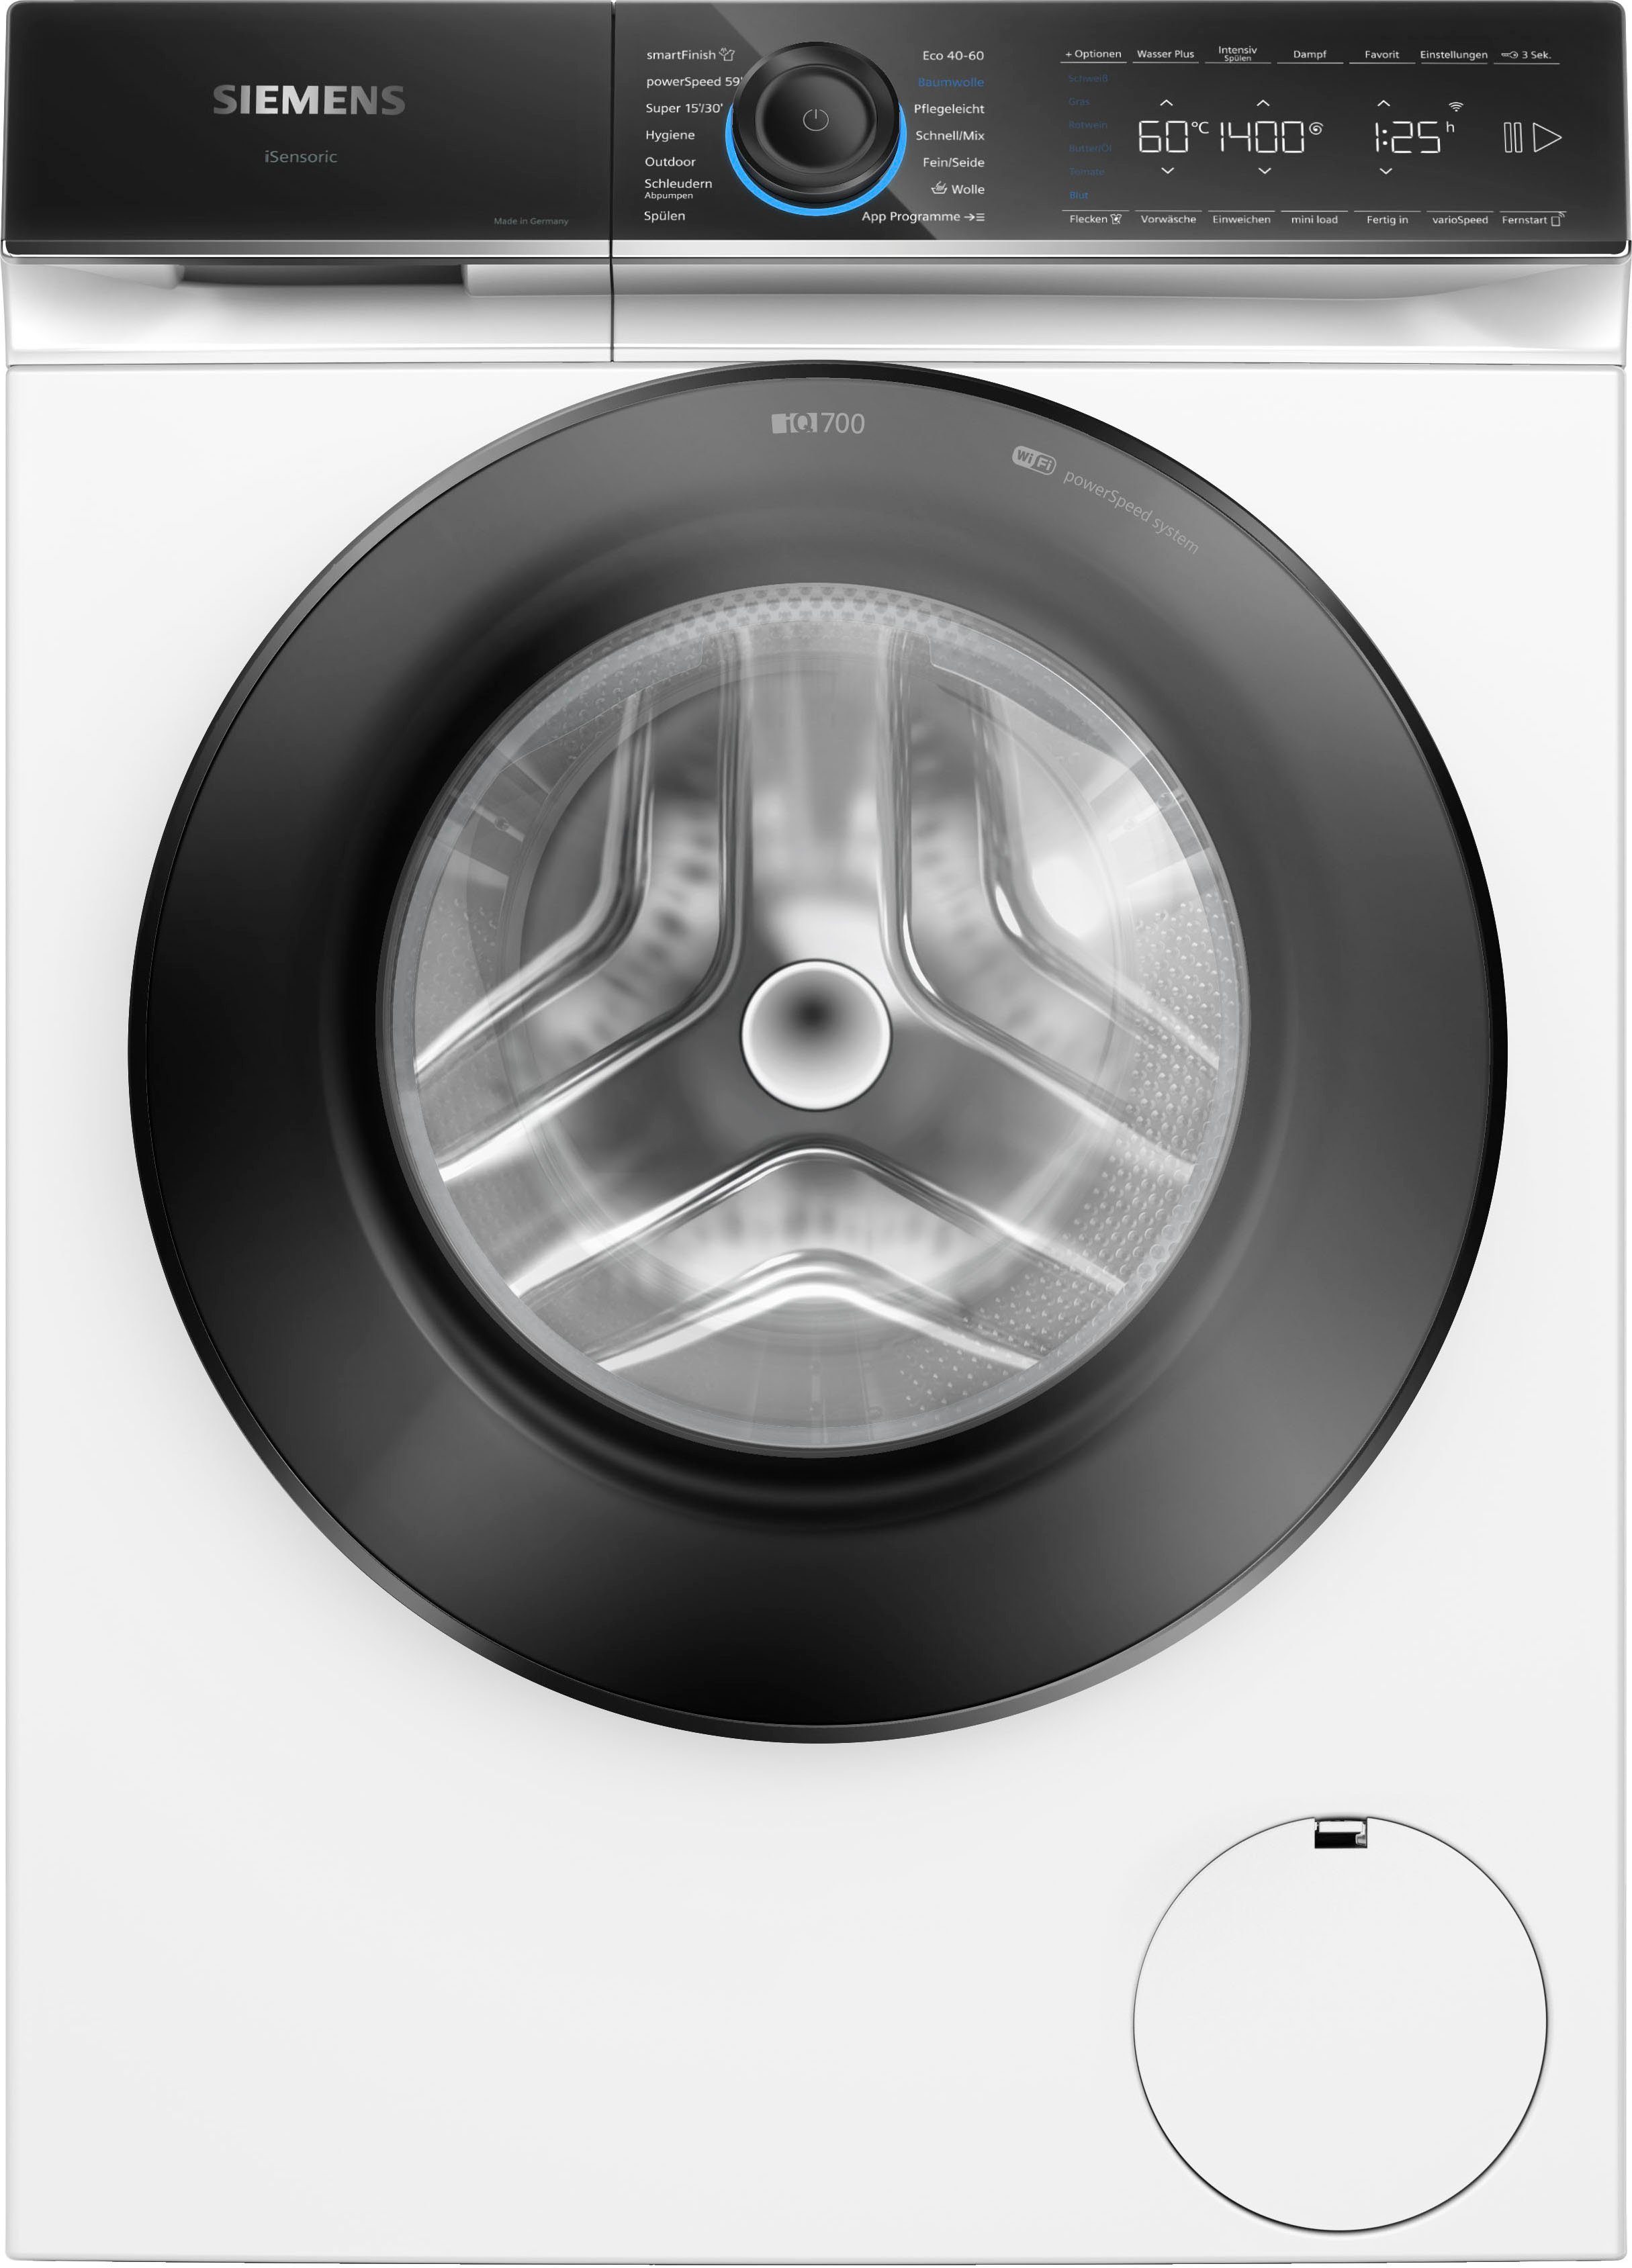 SIEMENS Waschmaschine iQ700 WG54B2030, 10 kg, 1400 U/min, Home Connect:  Waschmaschine bedienen von wo du möchtest mit der Home Connect App